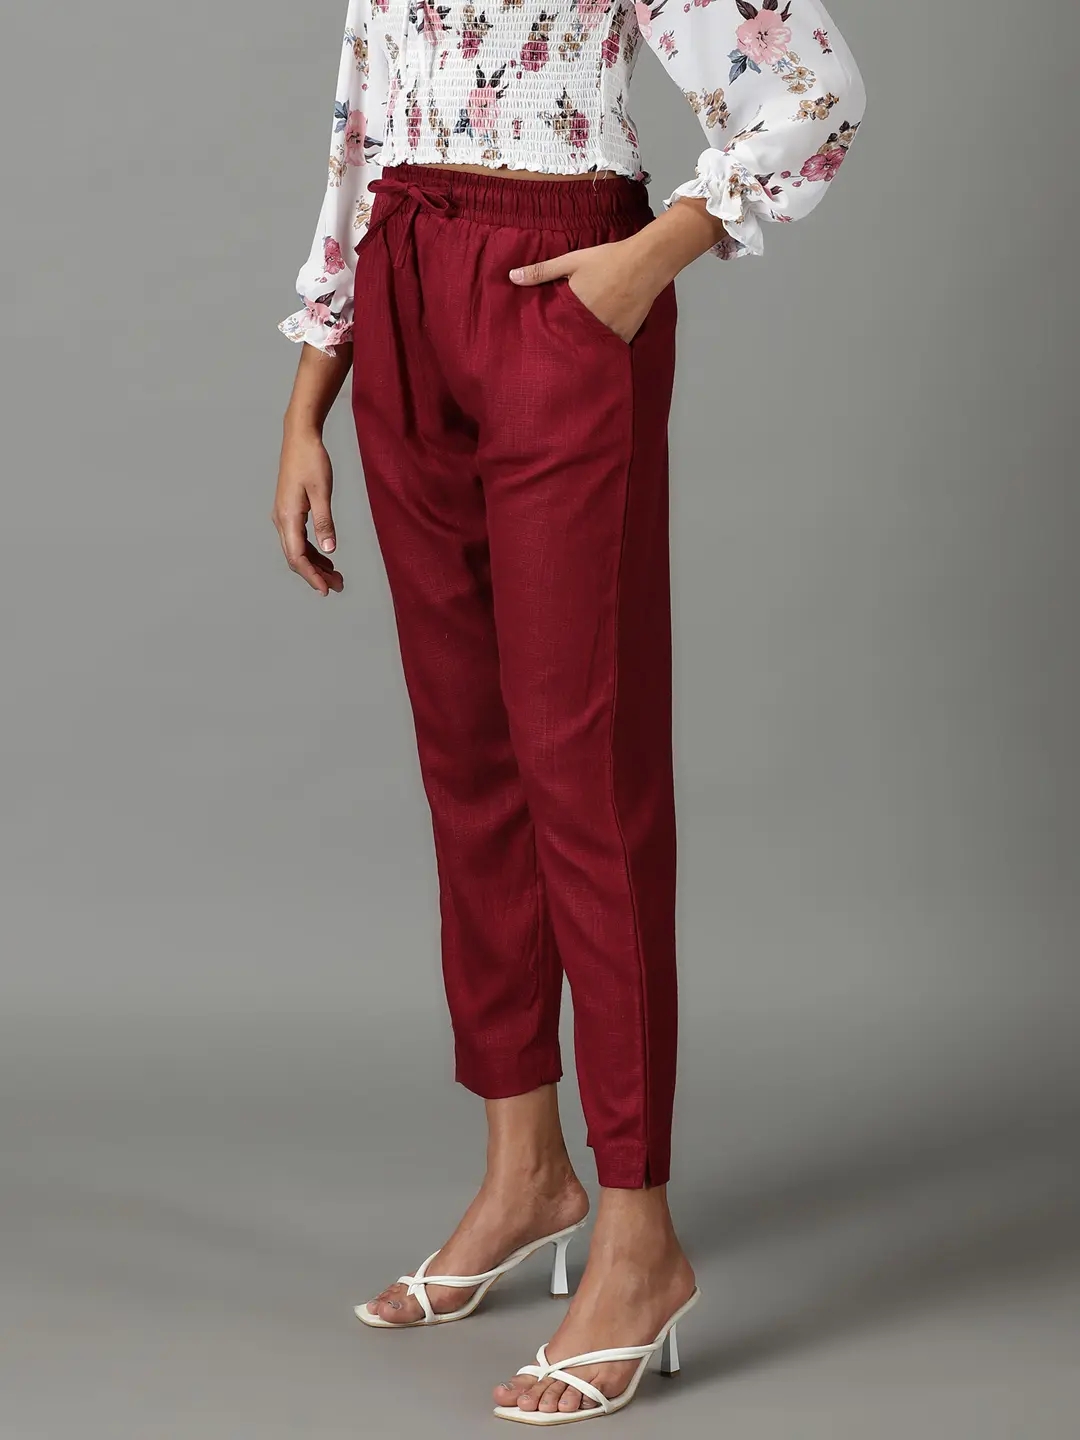 Buy Women Maroon Solid Formal Slim Fit Trousers Online  631332  Van Heusen